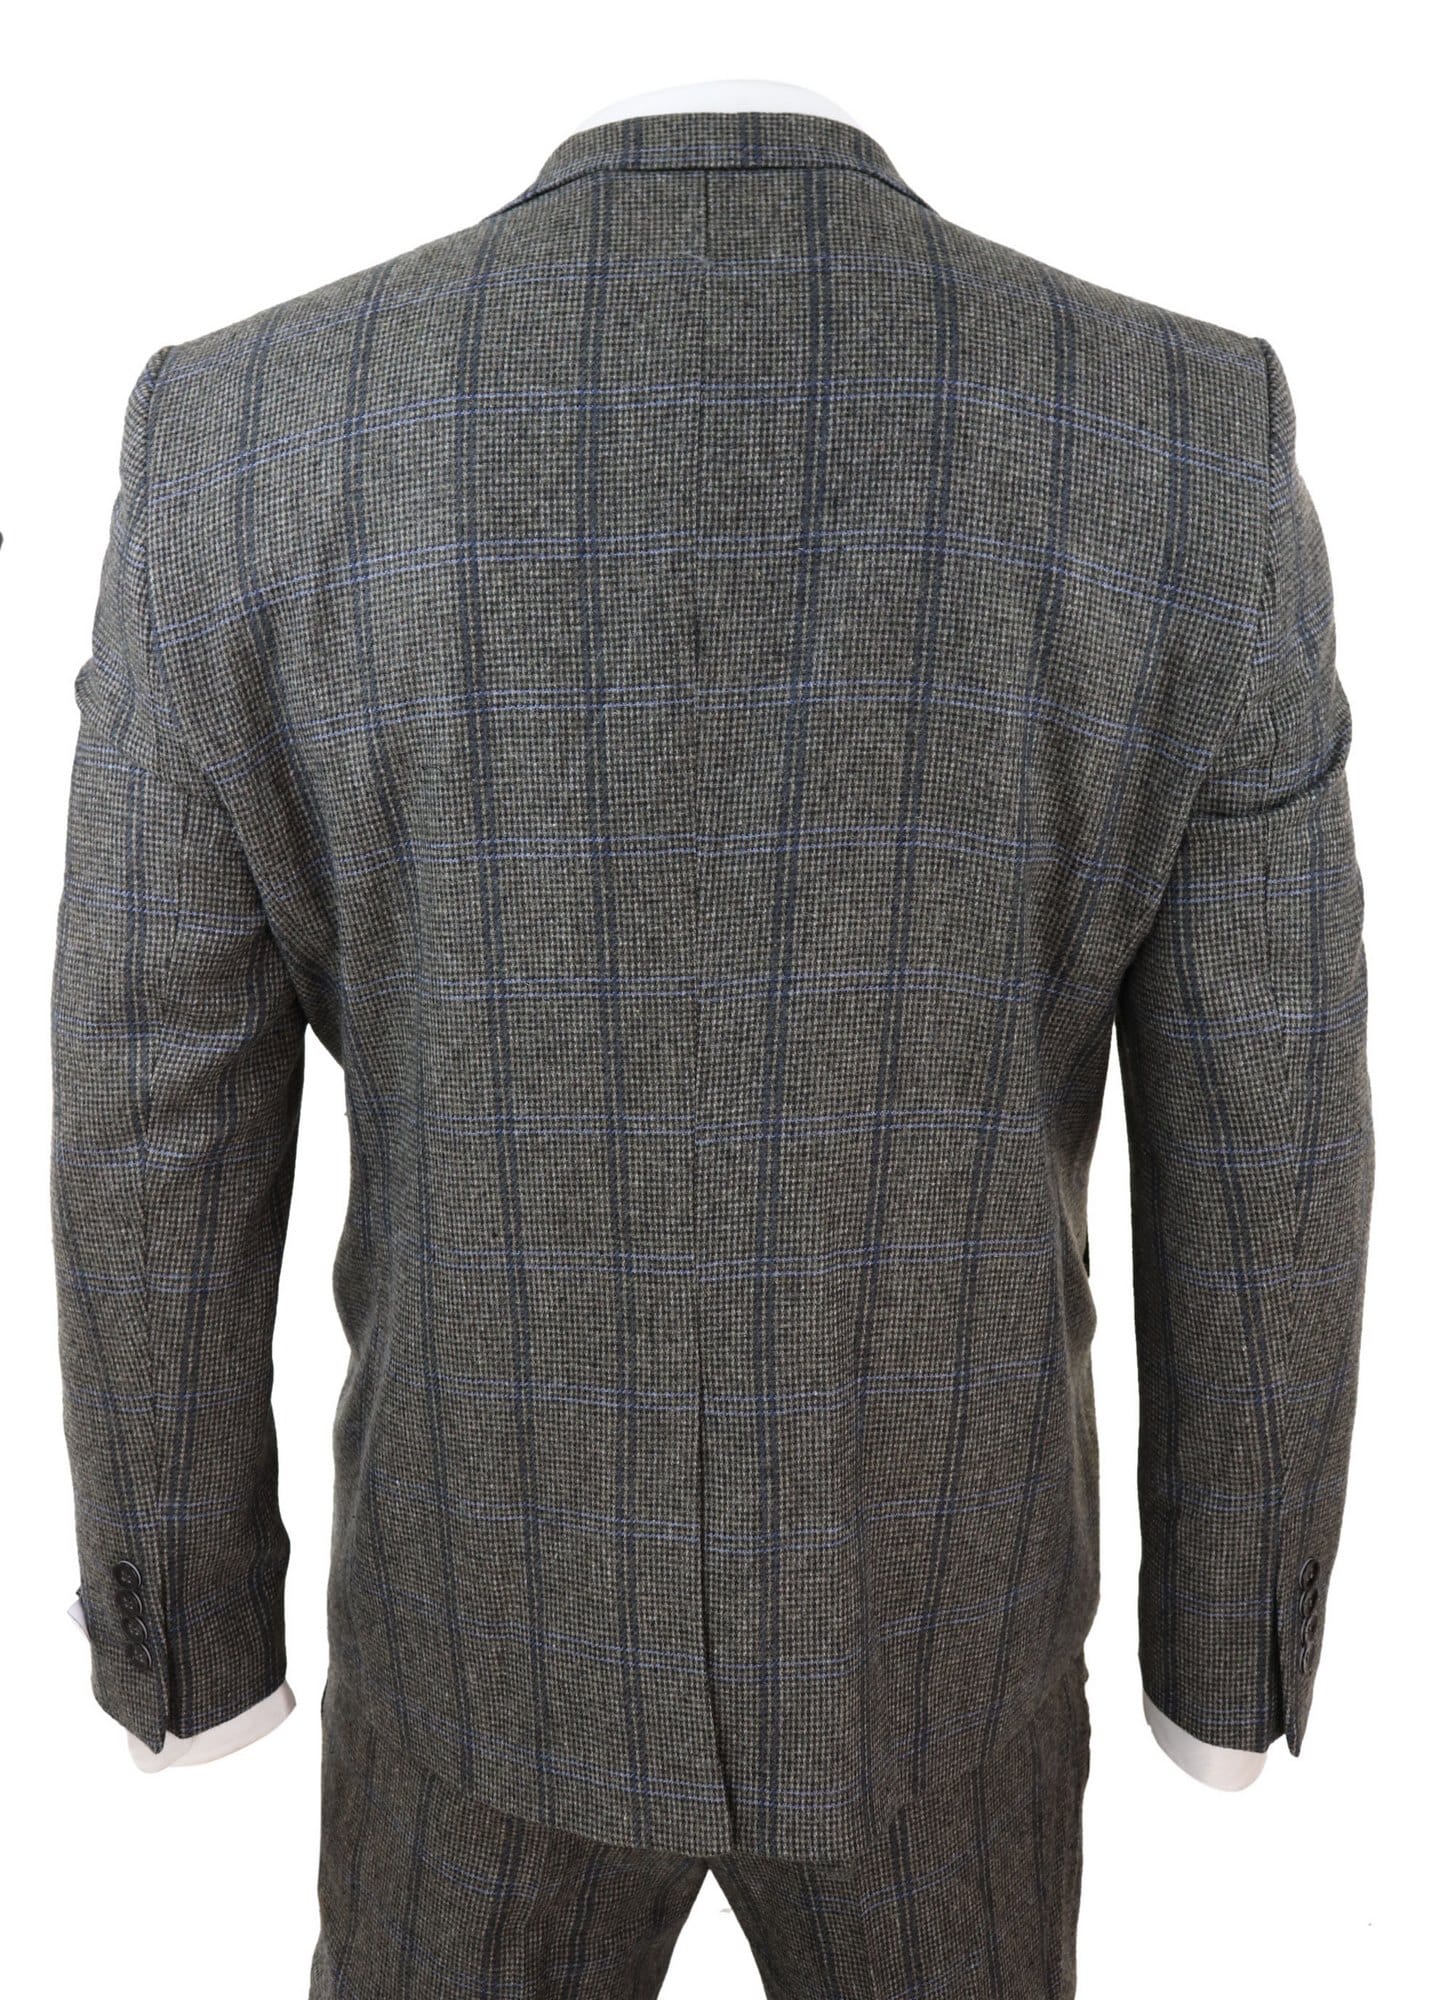 Grey Check 3 Piece Tweed Suit: Buy Online - Happy Gentleman United States